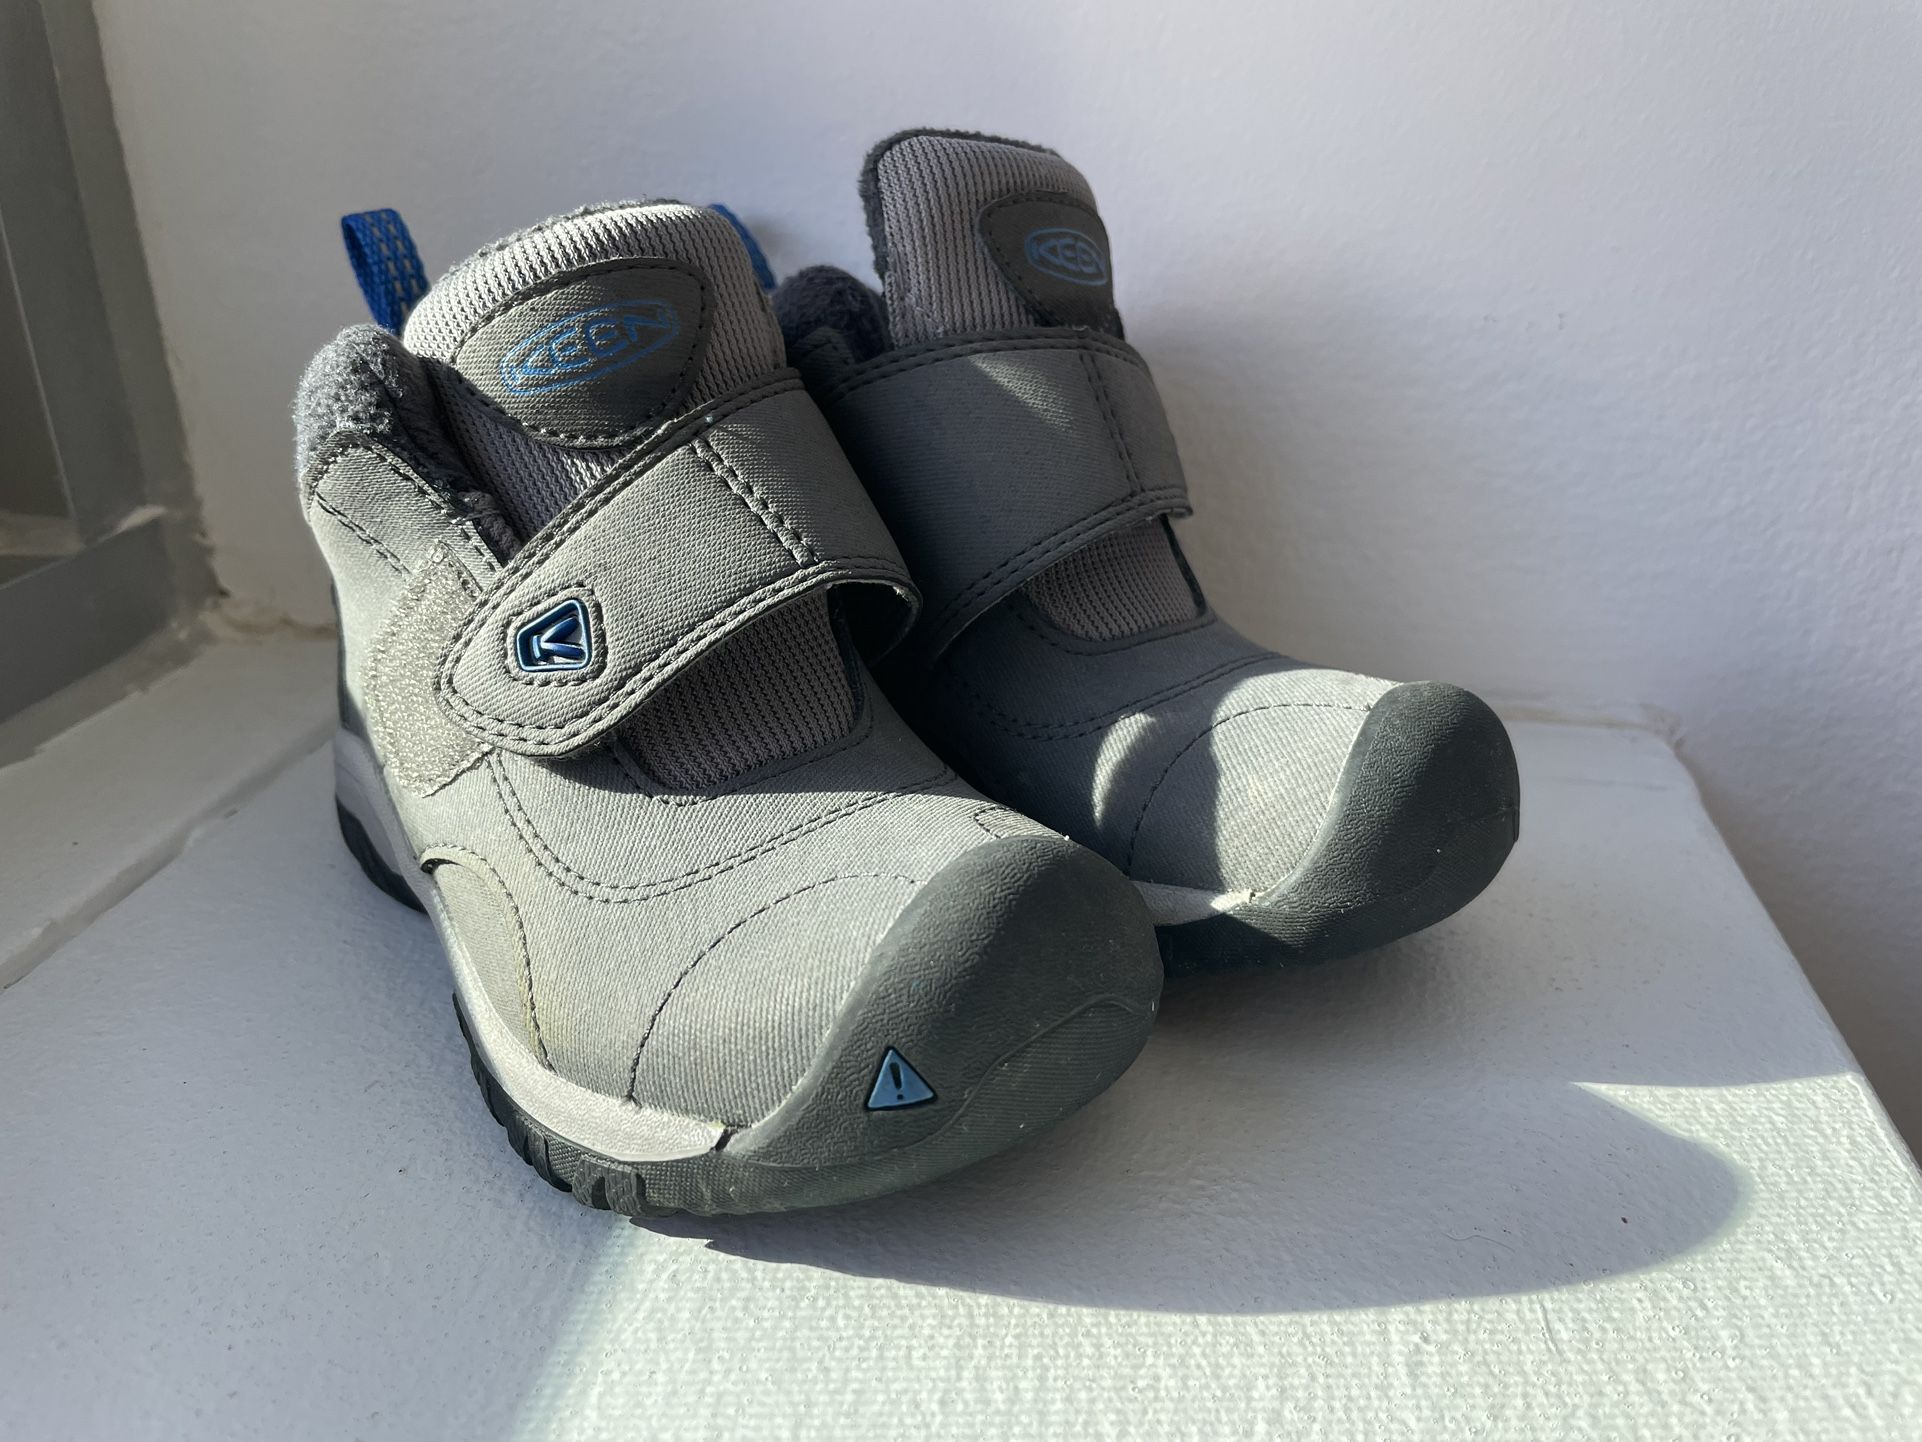  Kids KEEN Kootenay II Ankle Boots Size 8 Youth Gray Waterproof Winter Shoes 1019855